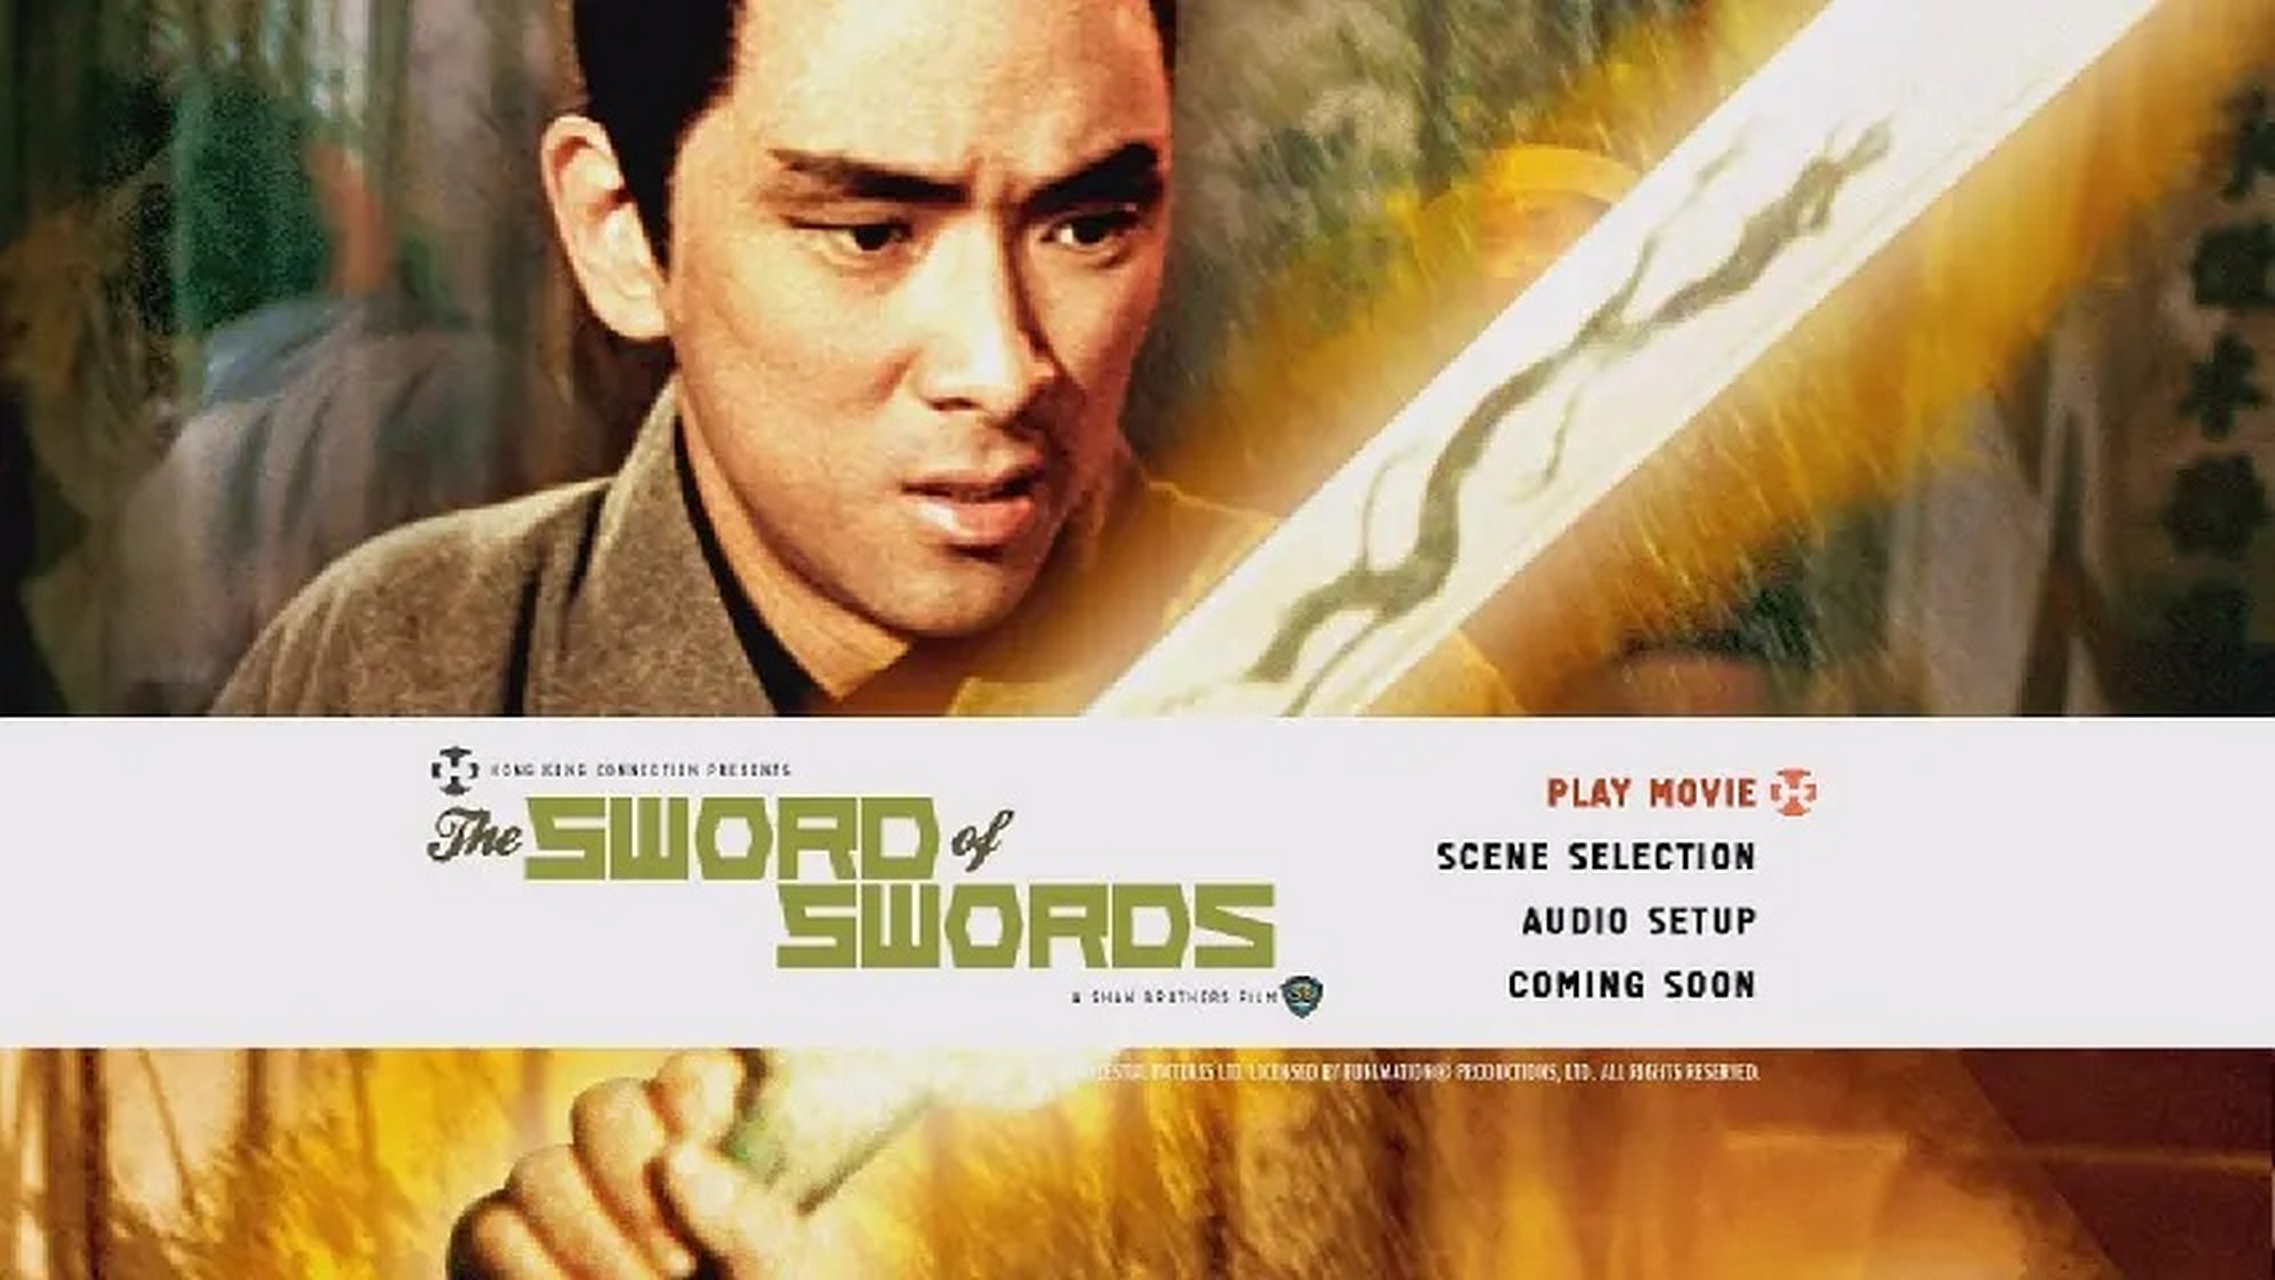 神刀,作为1970年上映的武侠片,王羽继续在电影中饰演身残志坚的正派